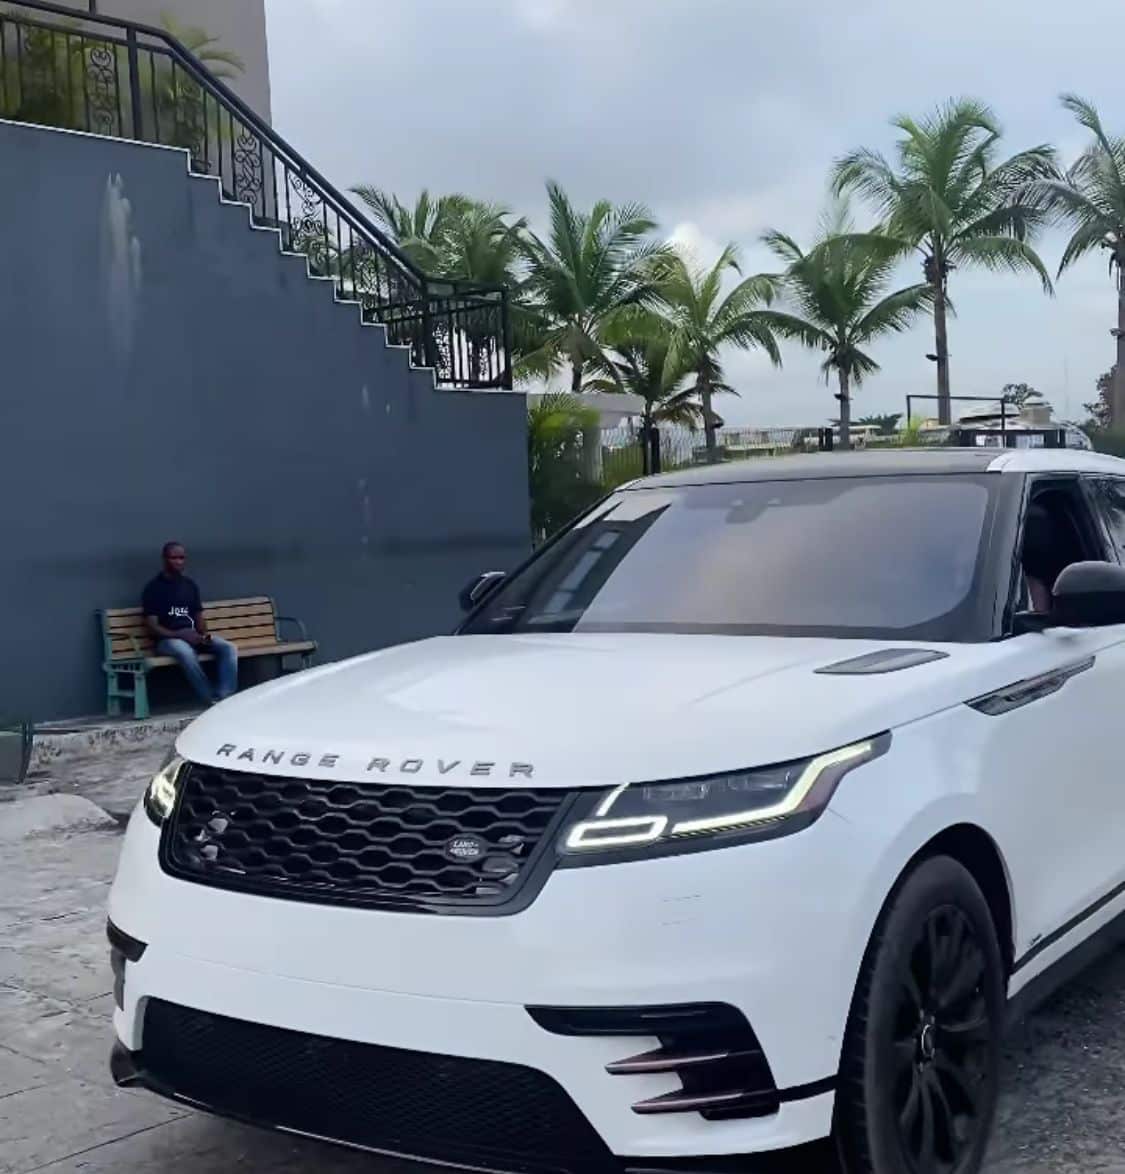 Ashmusy splashes millions of naira on Range Rover Velar (Video)